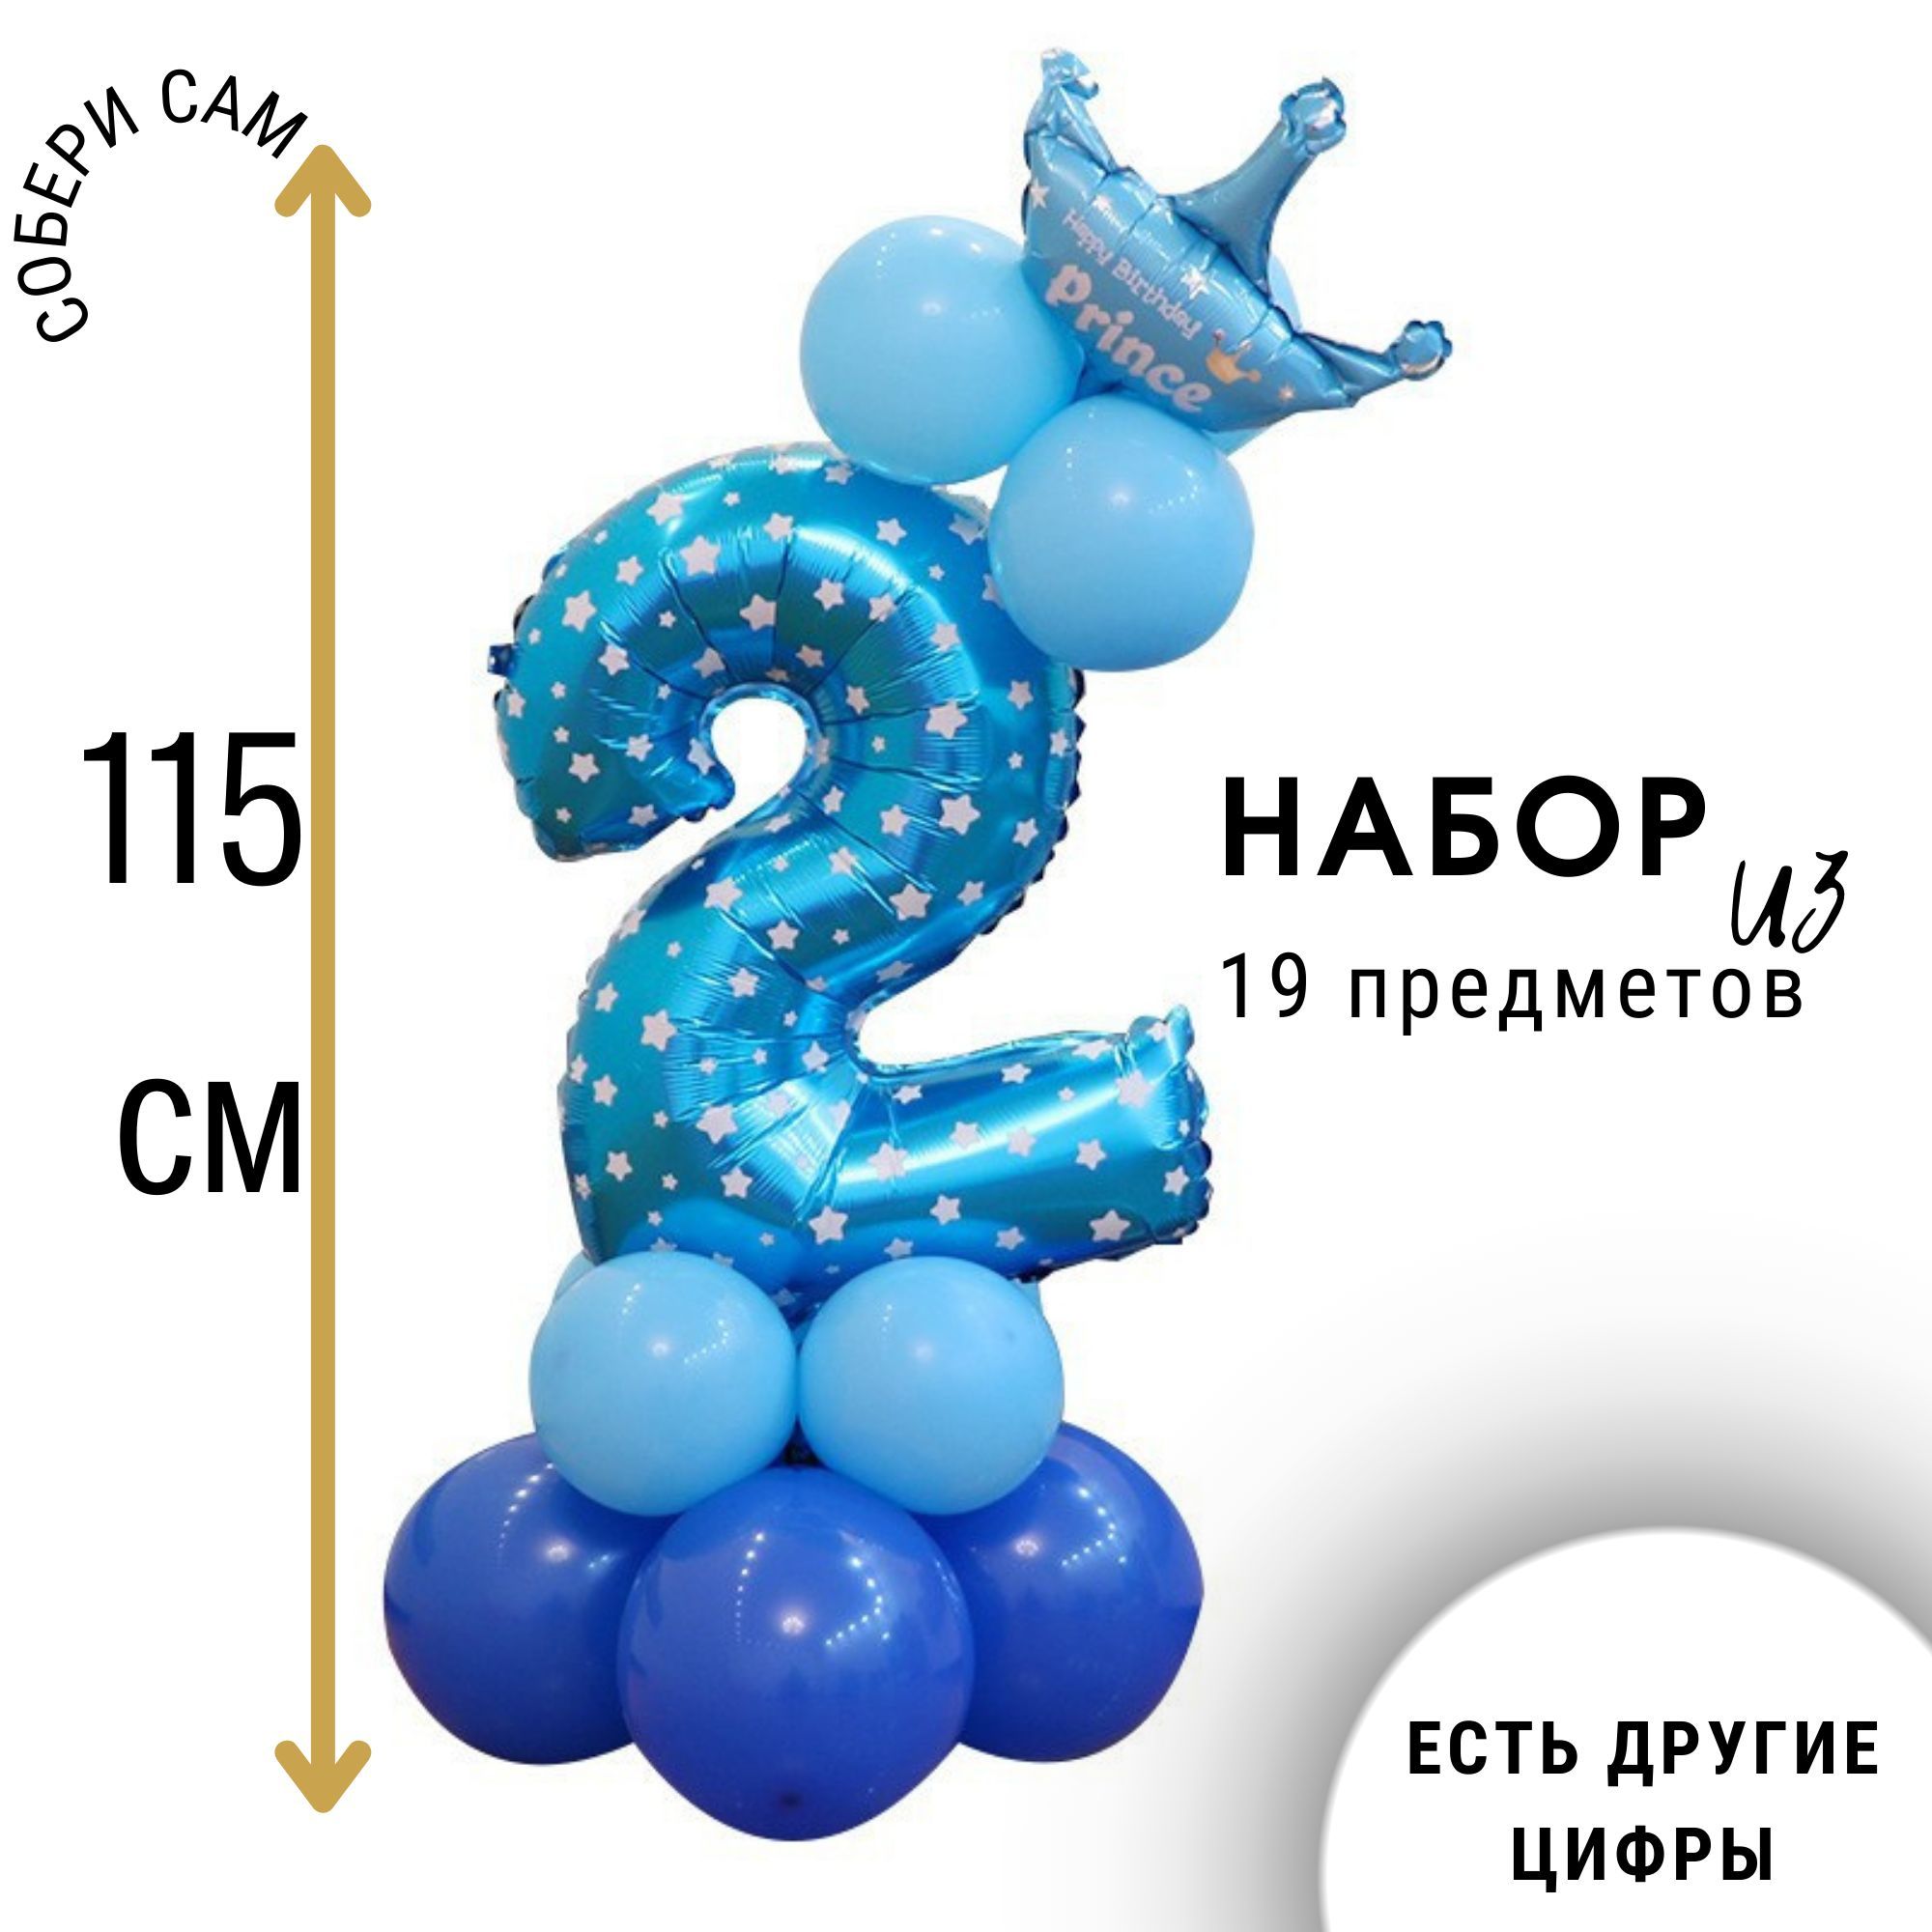 Цифры на День рождение на подставке из шаров 